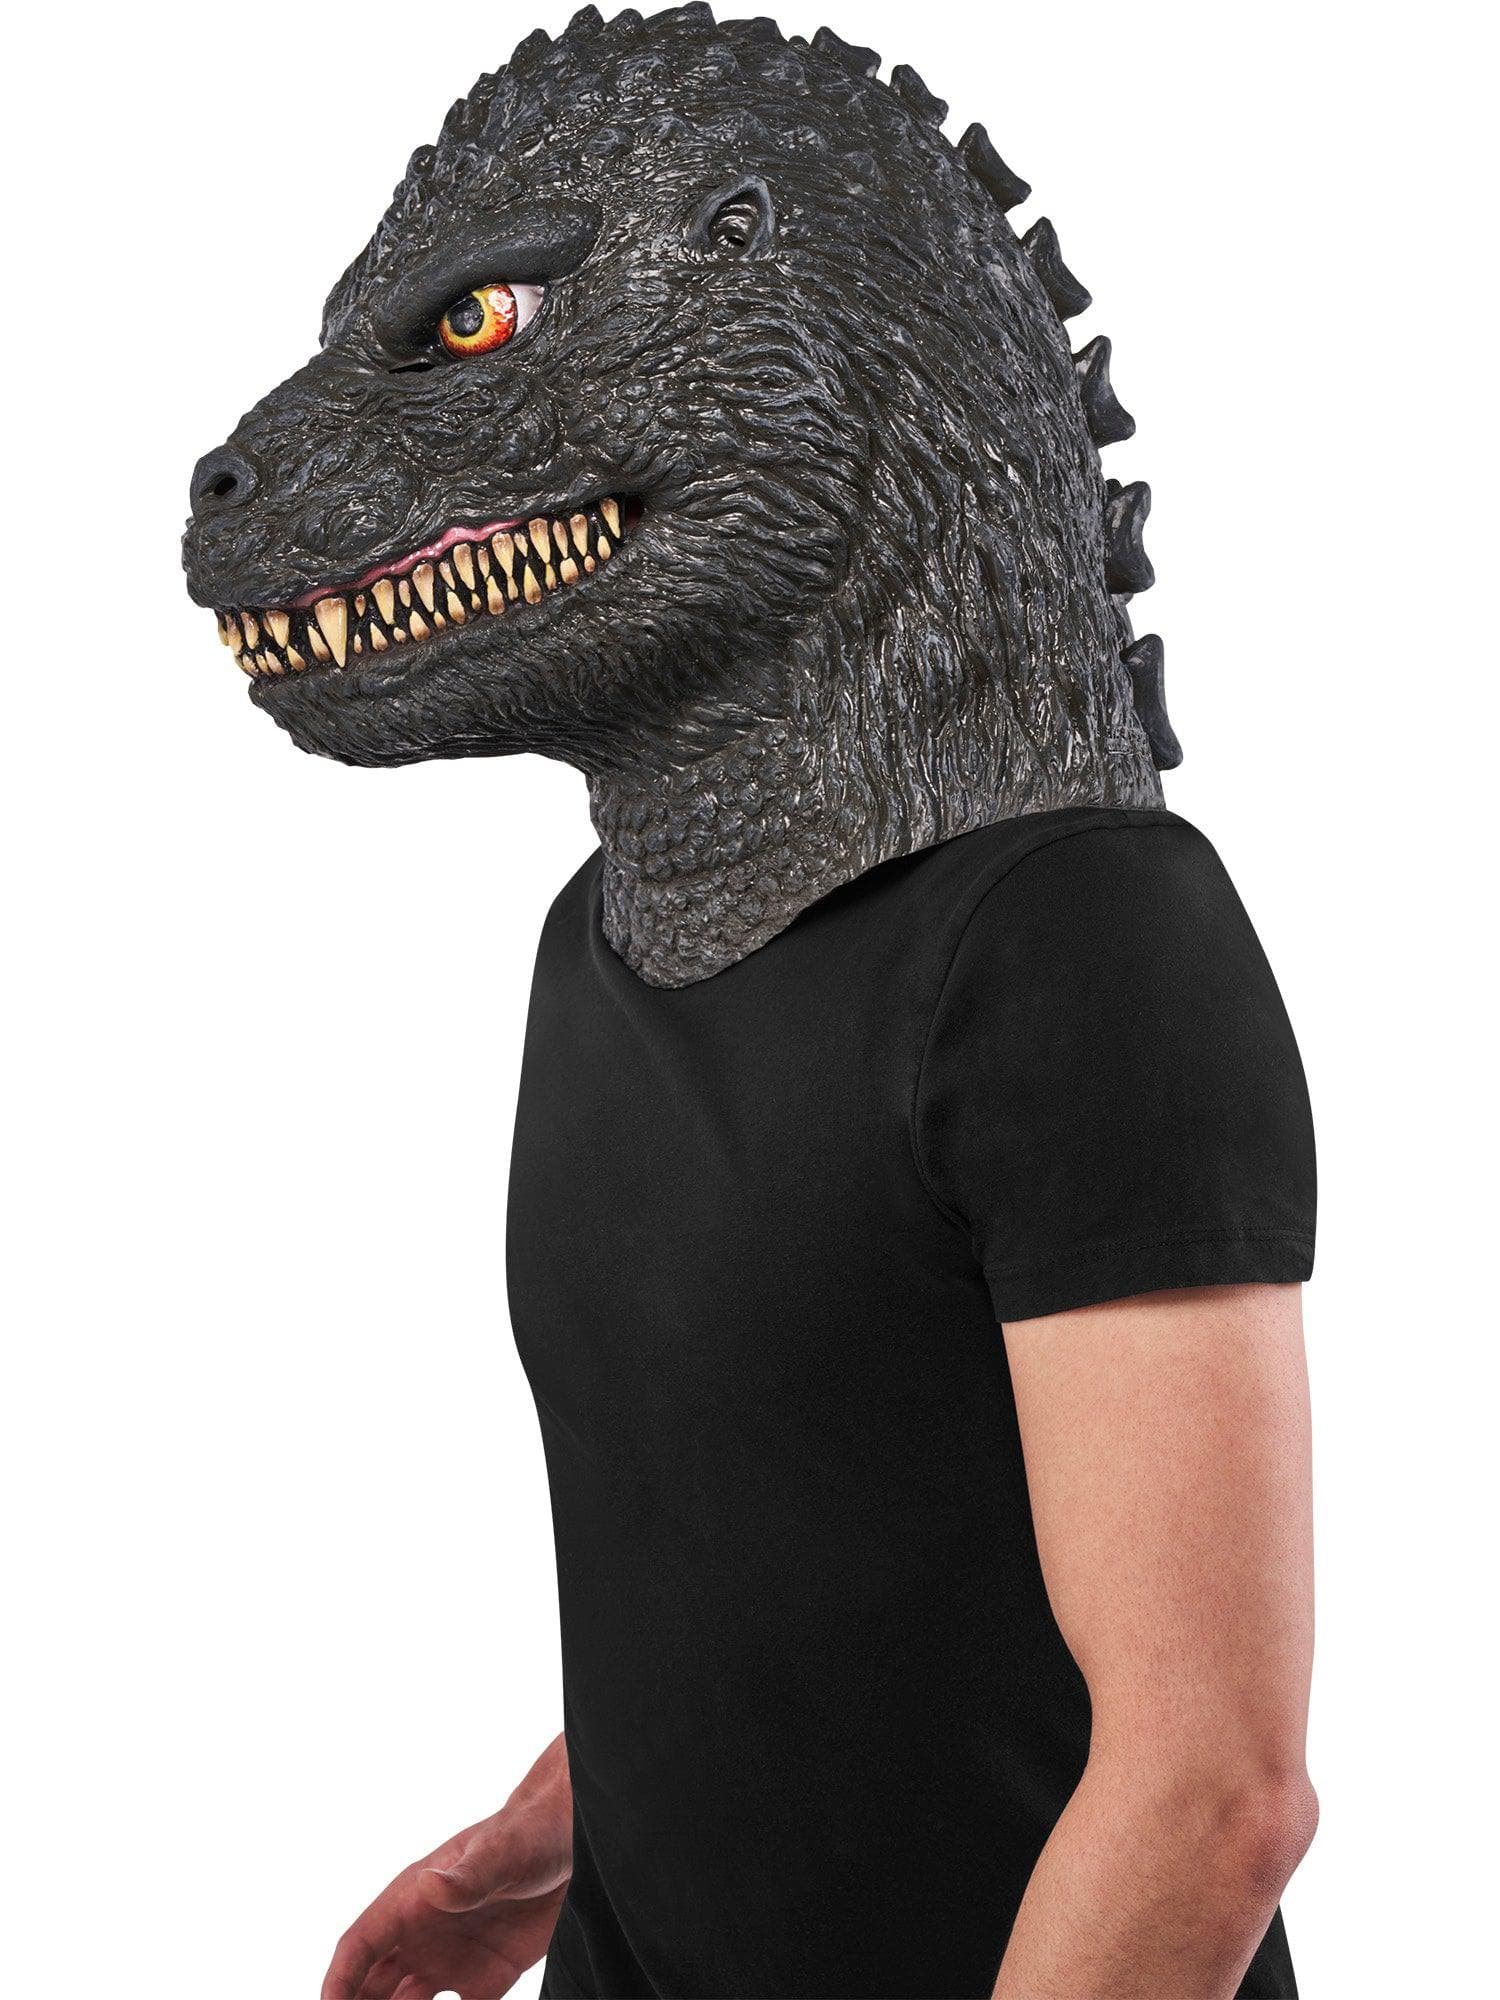 Adult Godzilla Full Overhead Mask - costumes.com